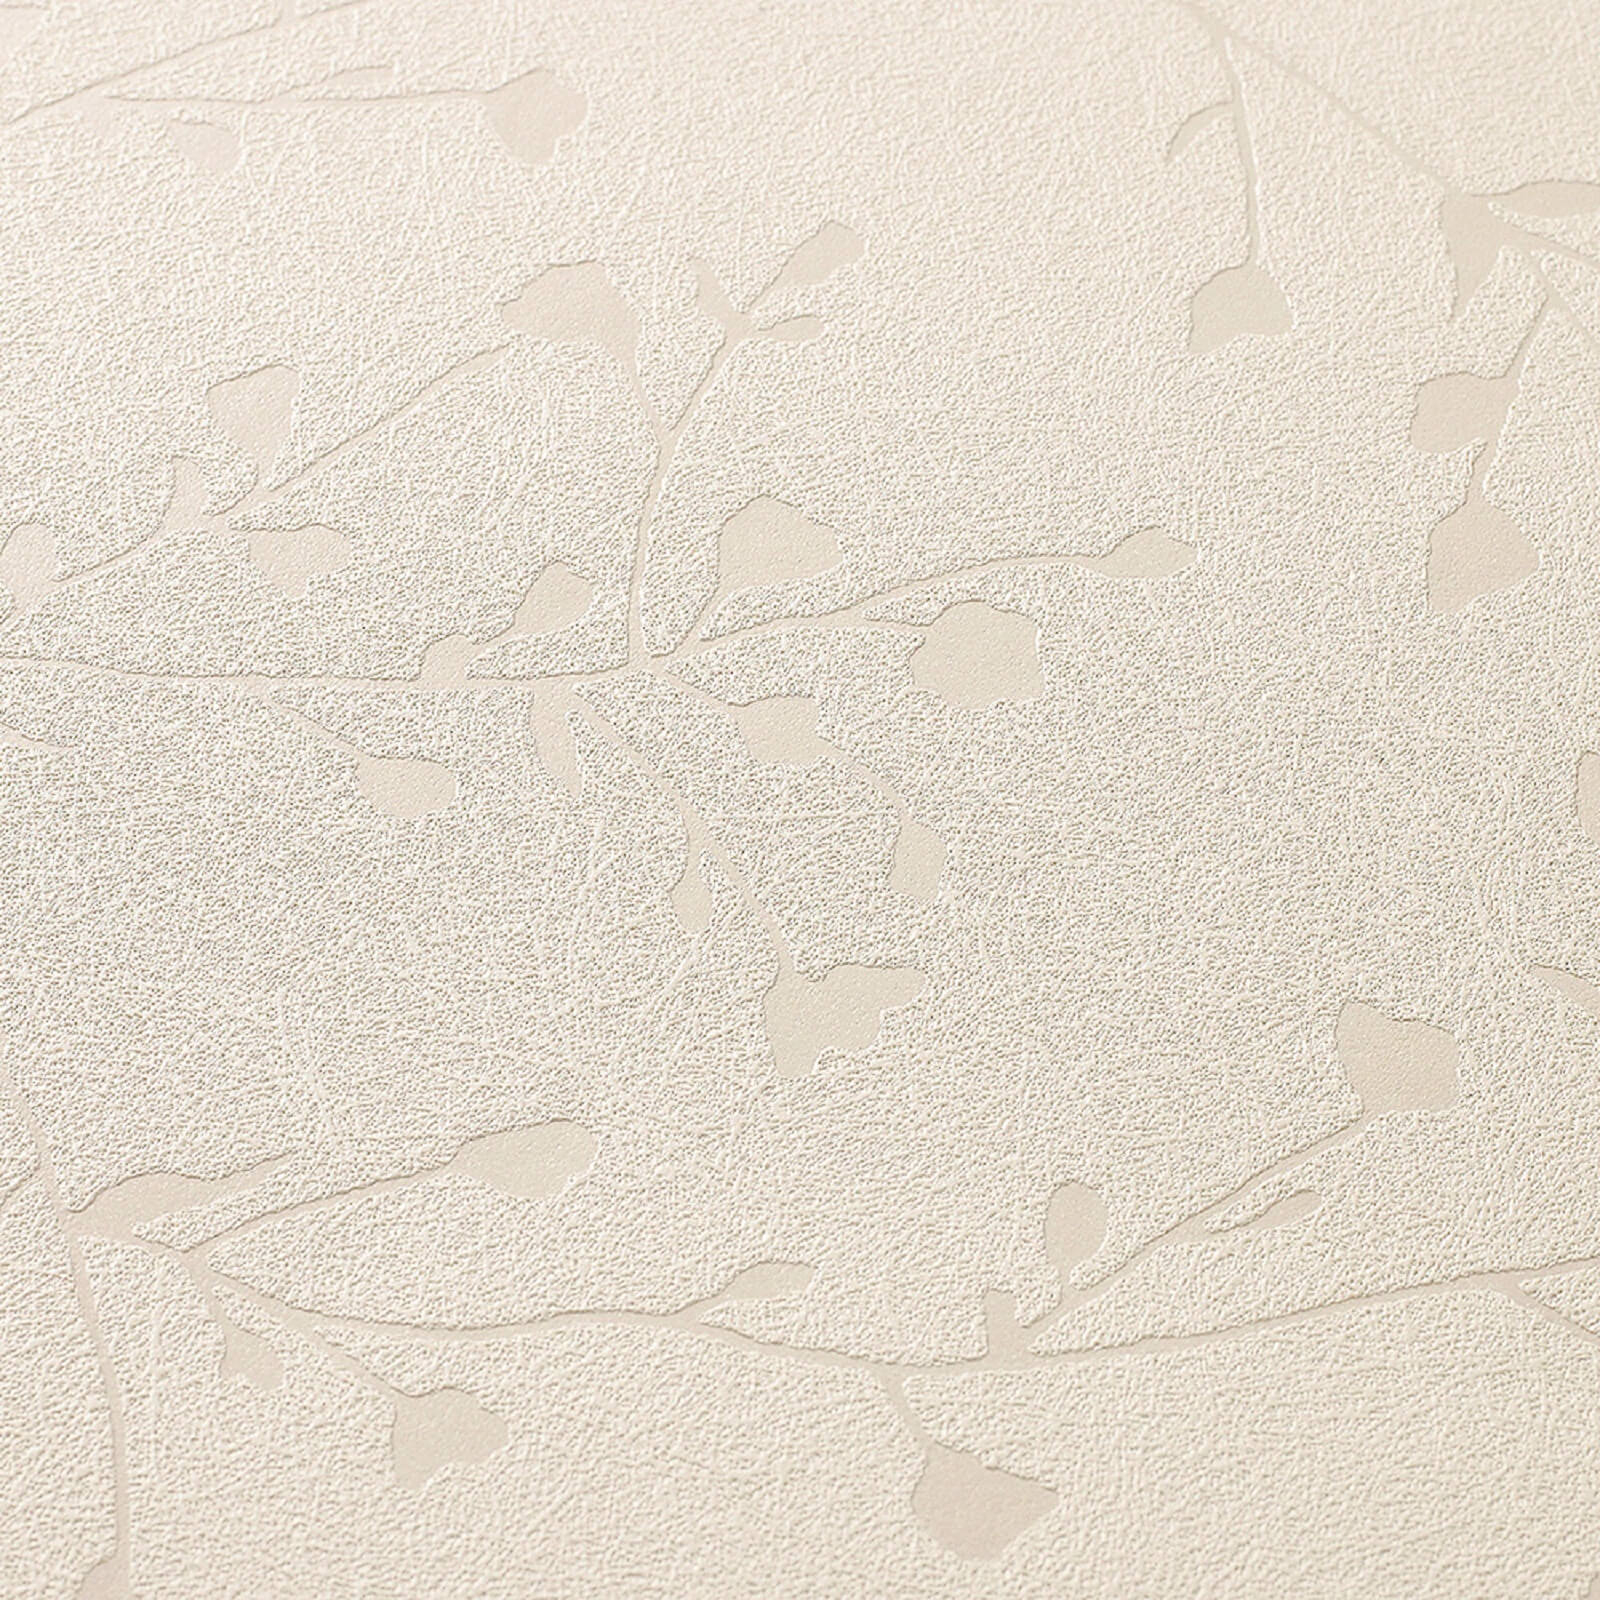 Superfresco Silhouette White Mica Wallpaper